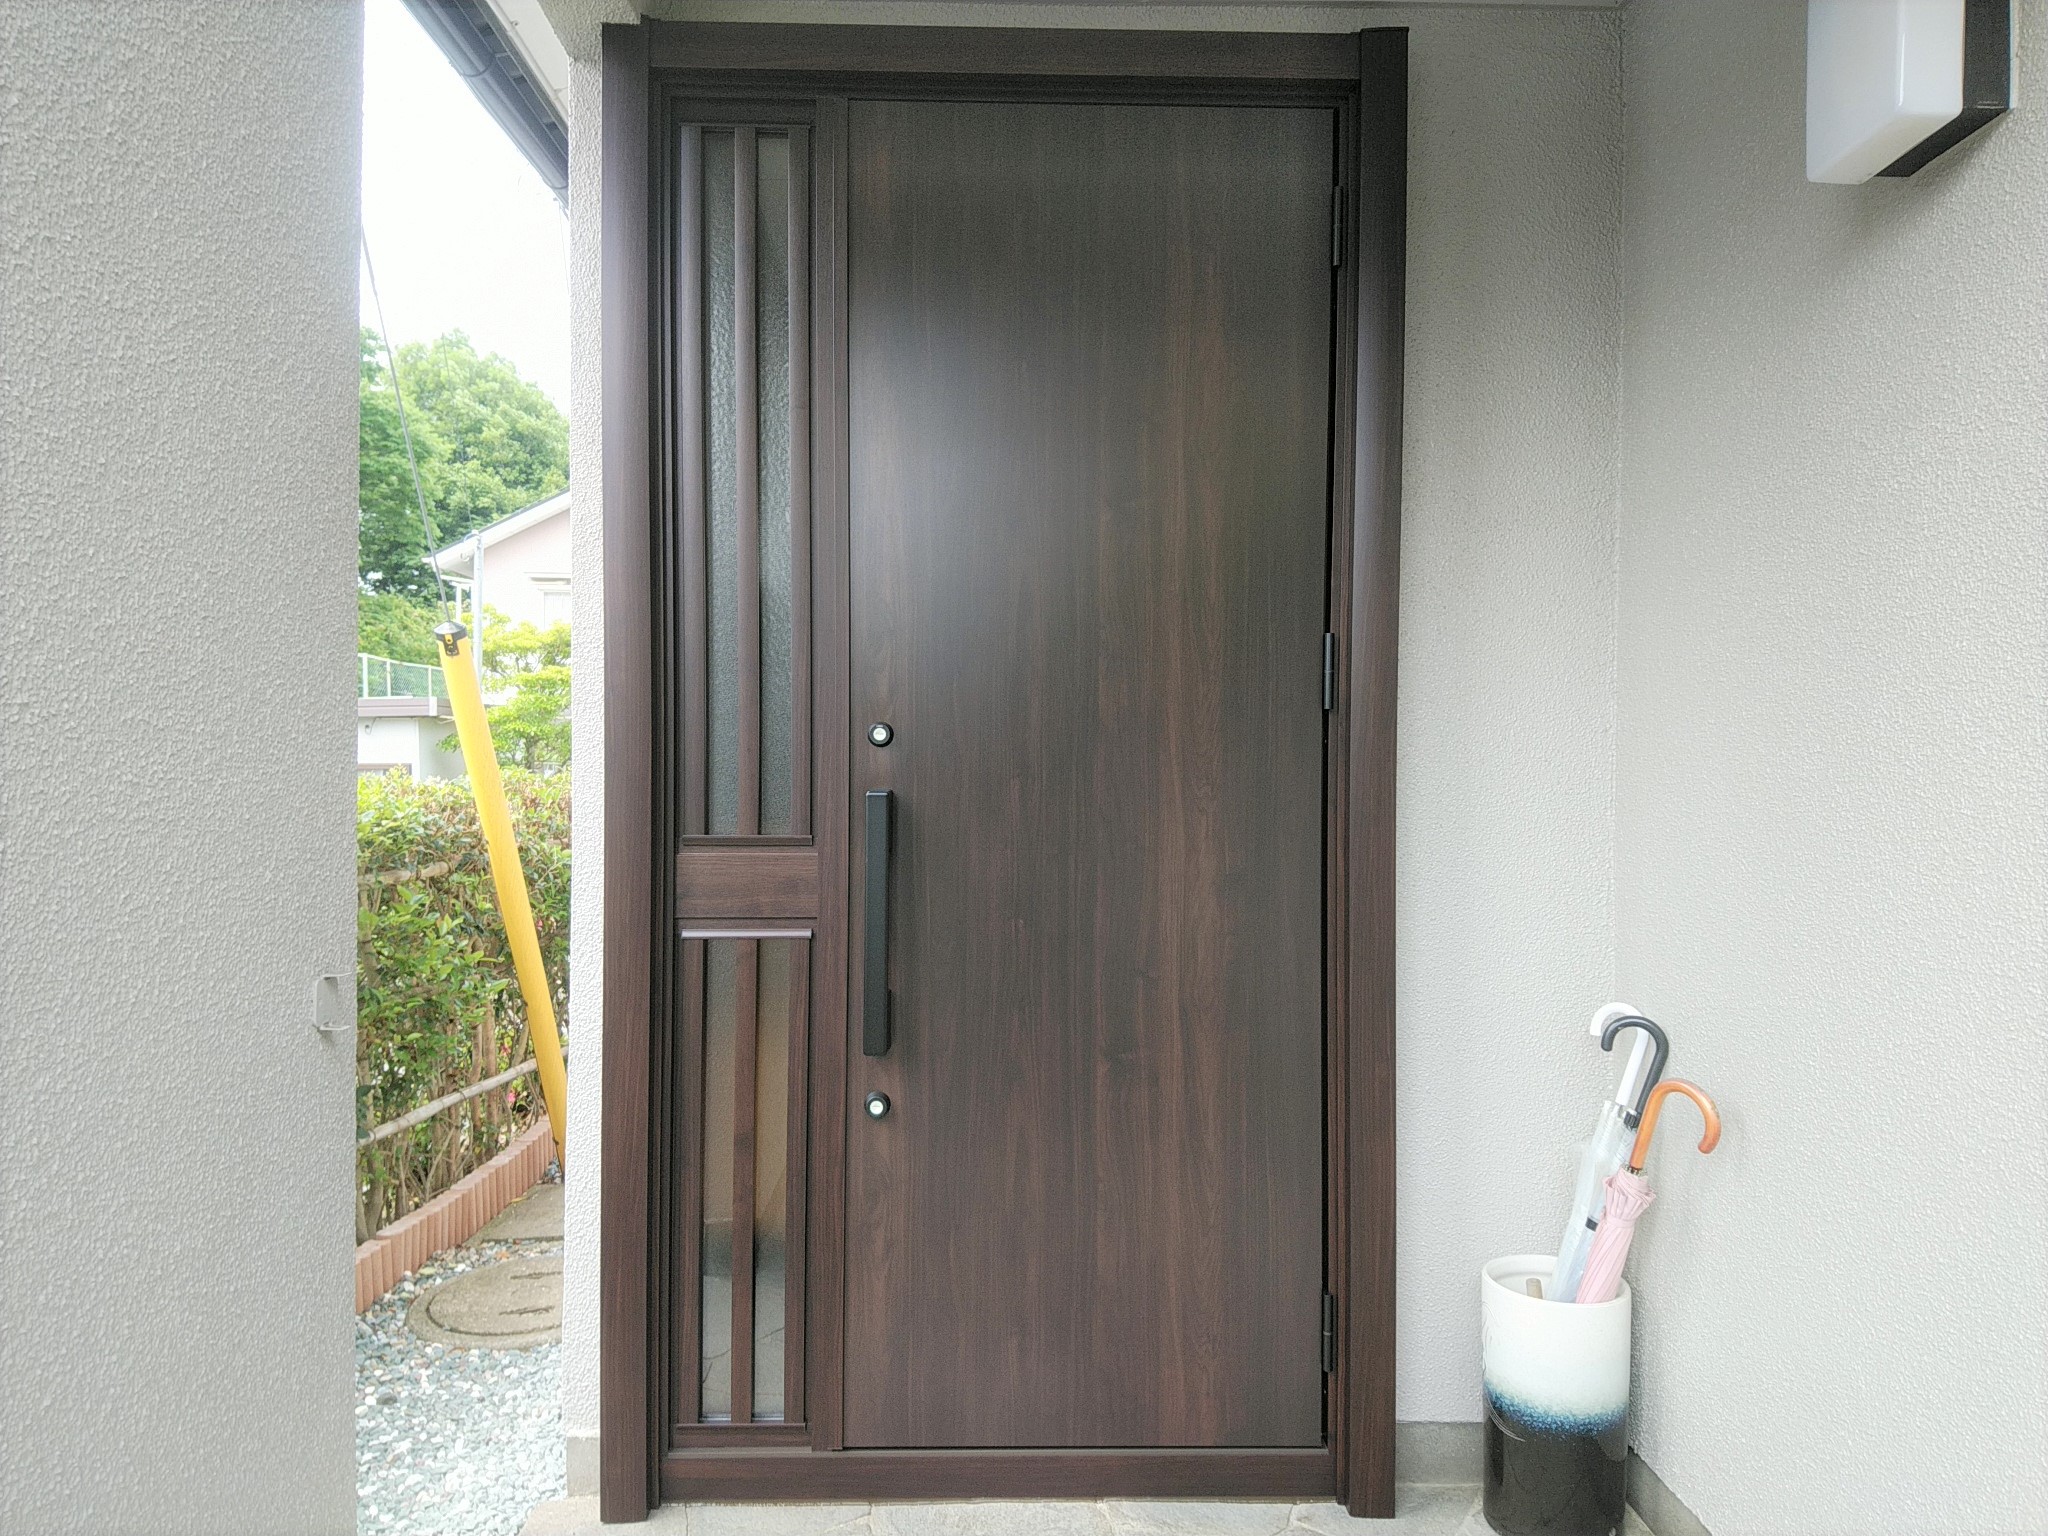 昭和の時代によく見られたデザインのドアをリフォームするとこんなに見違えます【LIXILリシェントM17型】玄関ドアのリフォームなら玄関ドア